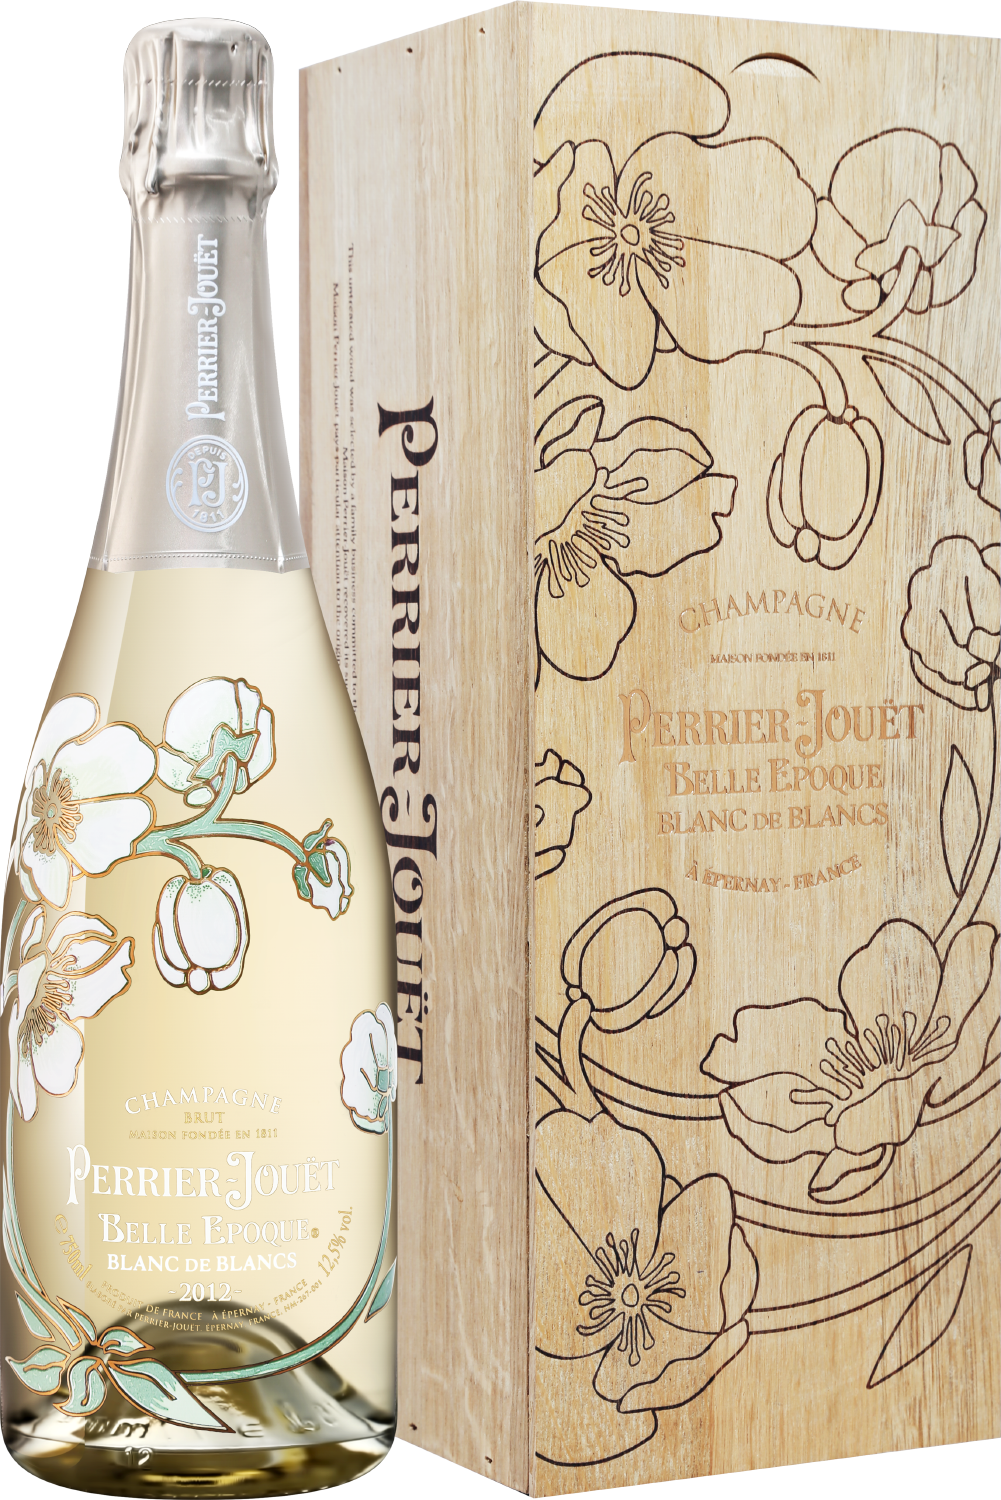 Perrier-Jouet Belle Epoque Blanc de Blancs 2012 Champagne AOC Brut (gift box) ayala blanc de blancs brut champagne aoc gift box